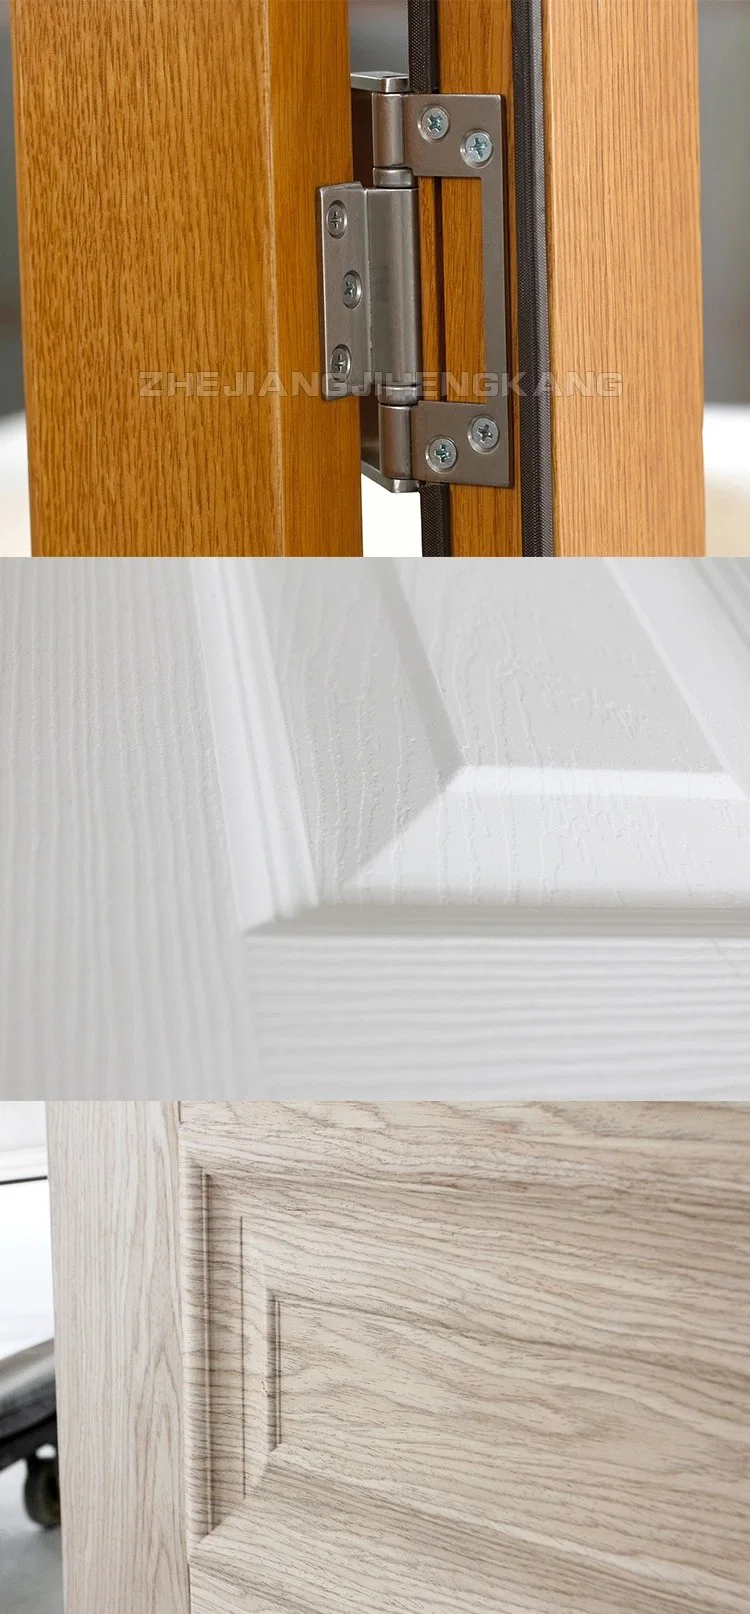 Jhk Internal Oak Bifold Wooden Shutter White Wooden Blinds Door